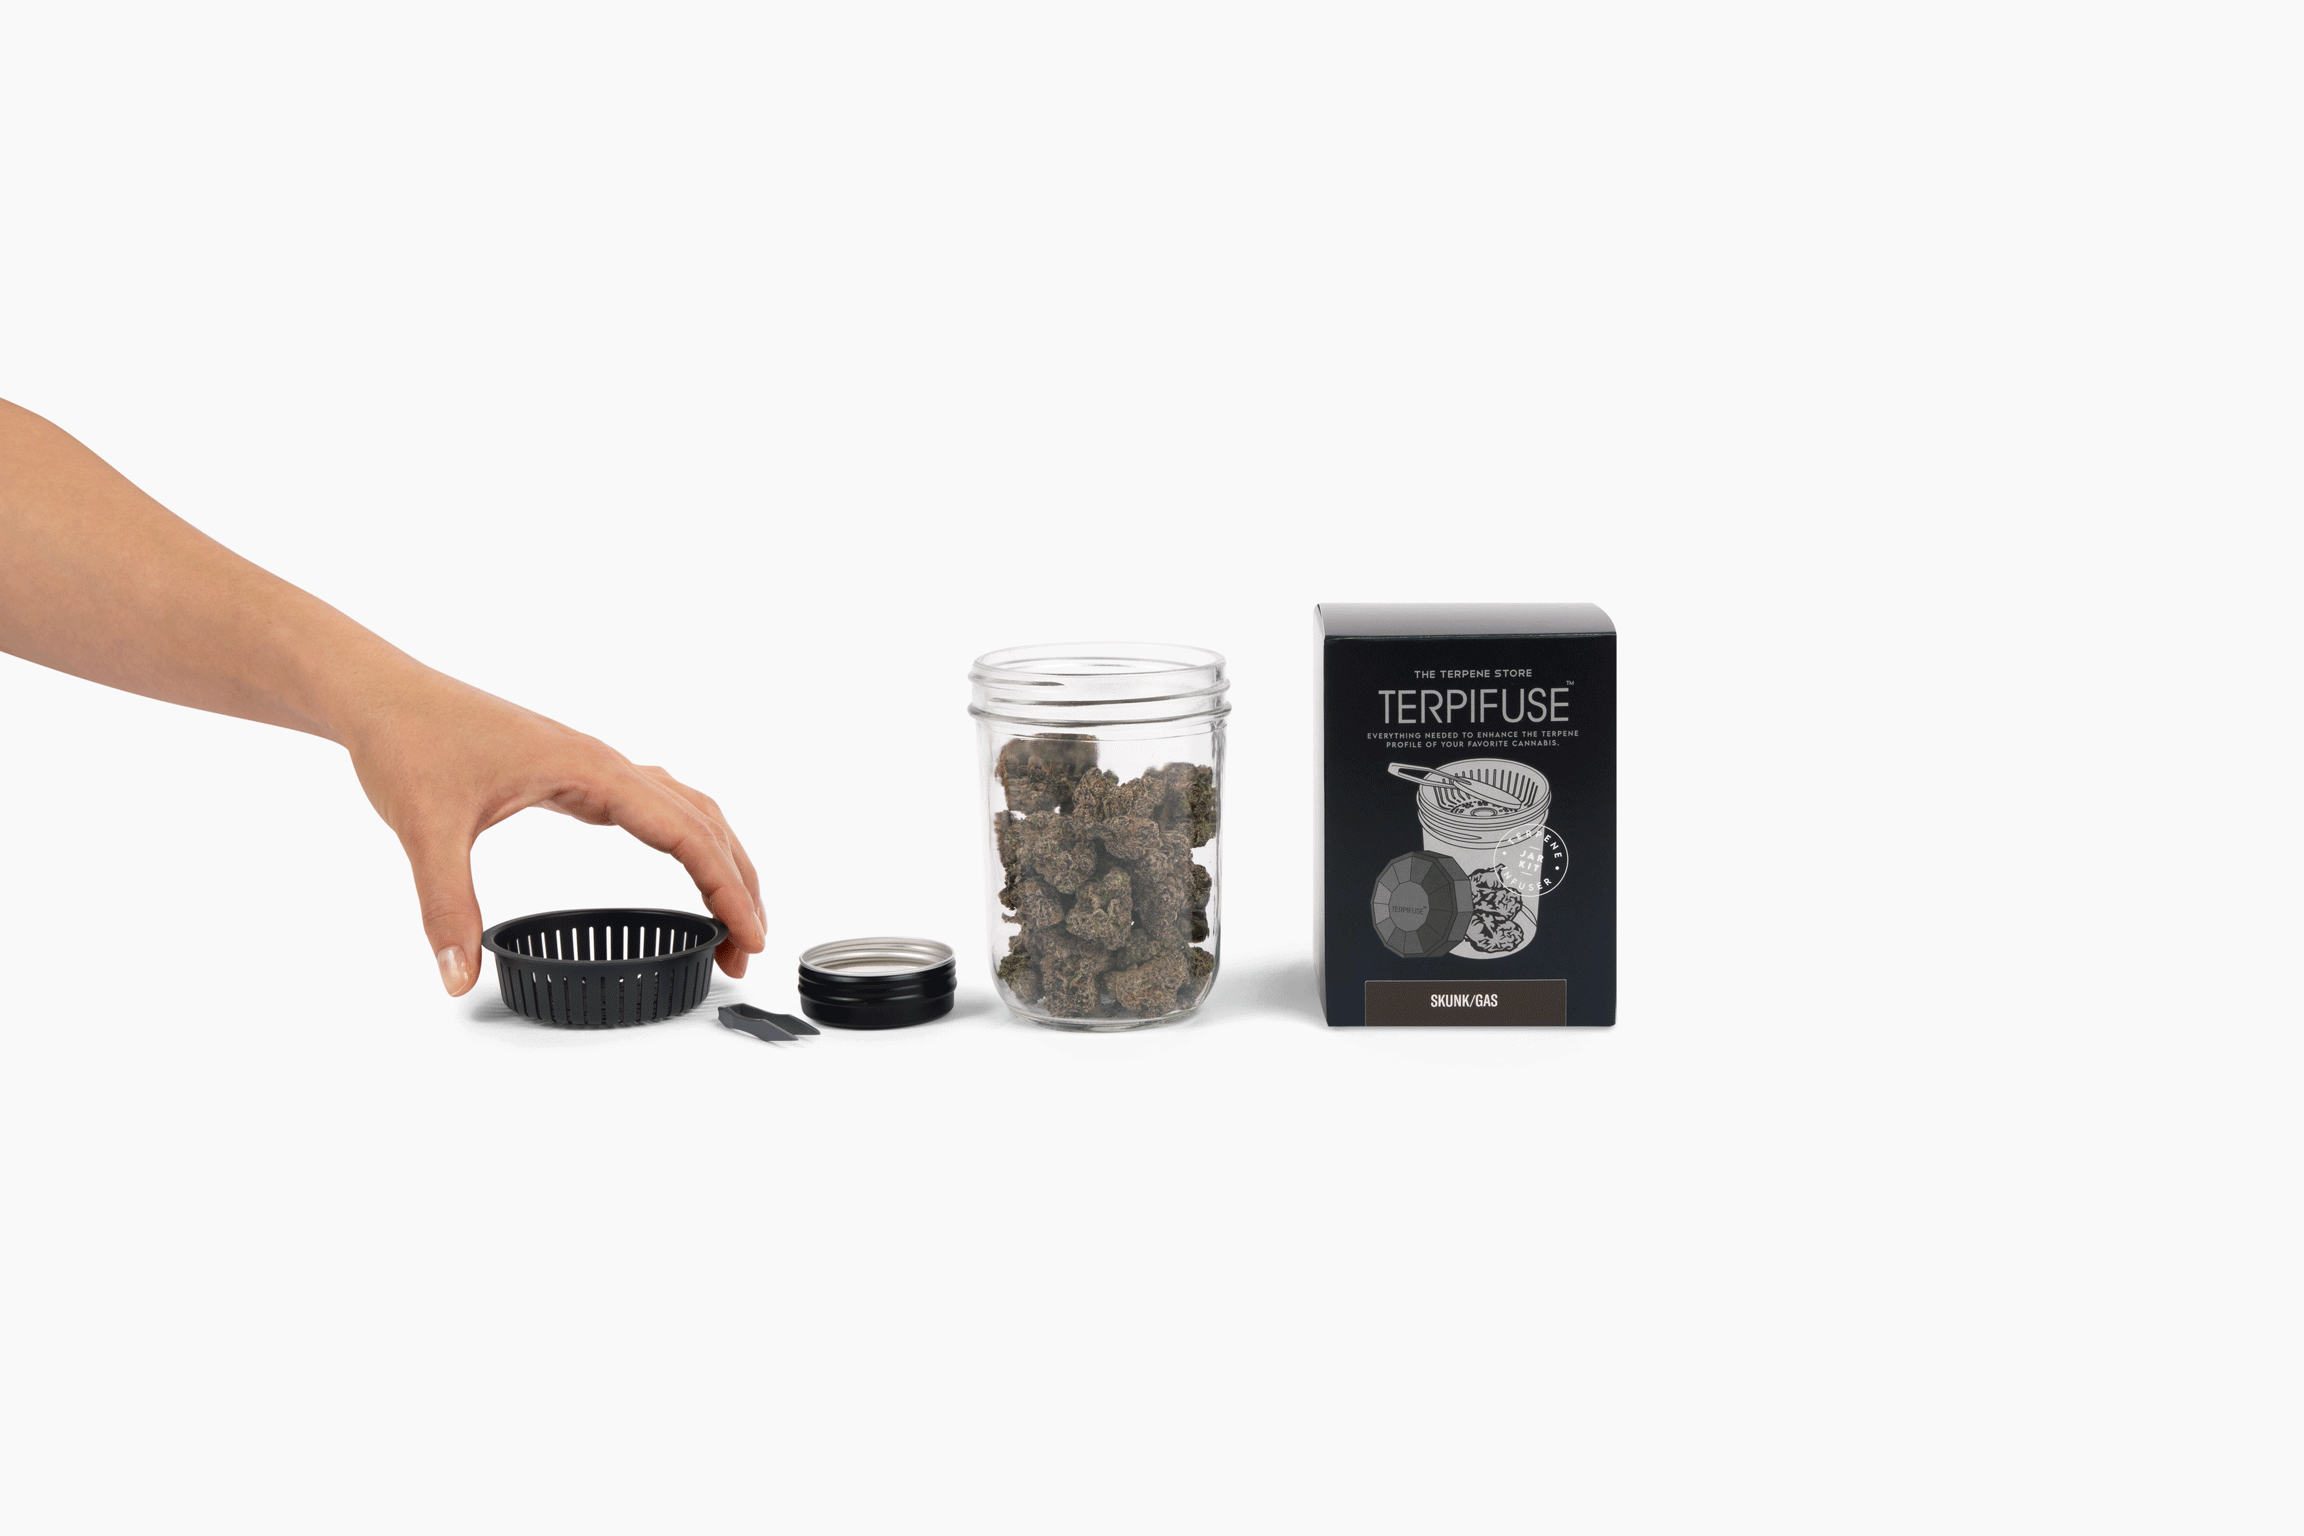 Skunk/Gas - Terpifuse Jar Kit